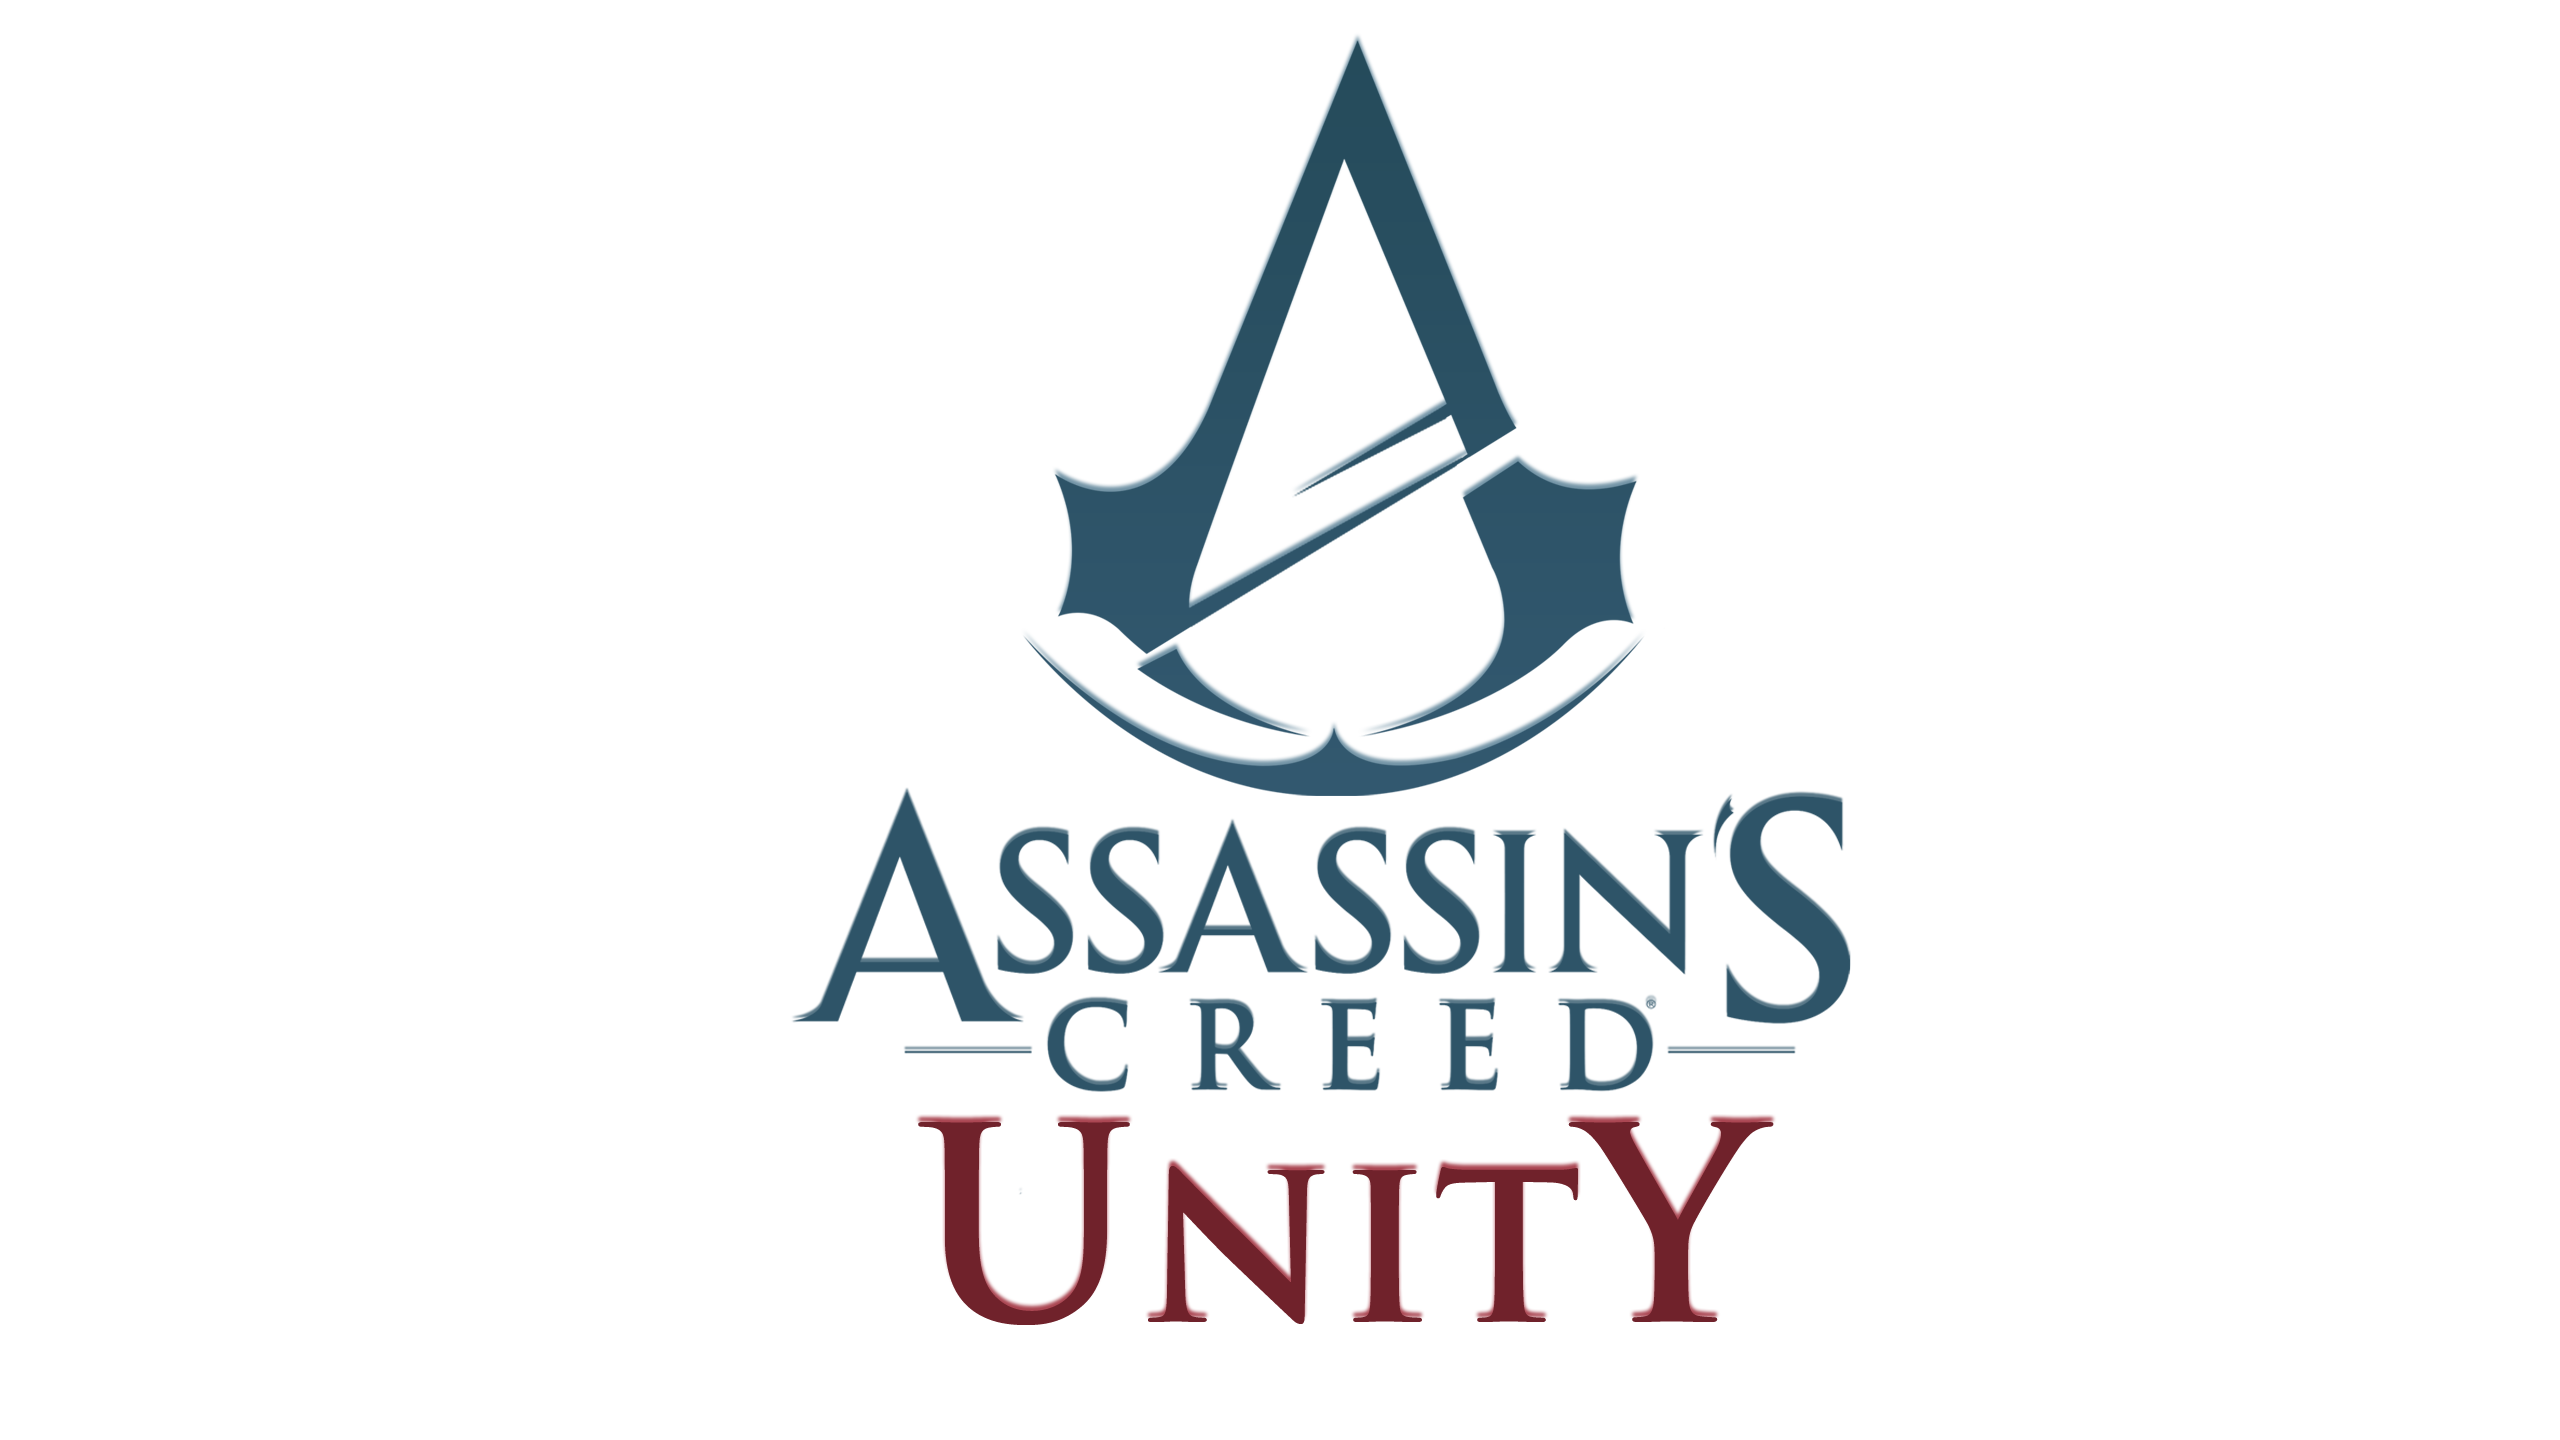 Assassin’s Creed Unity rimandato